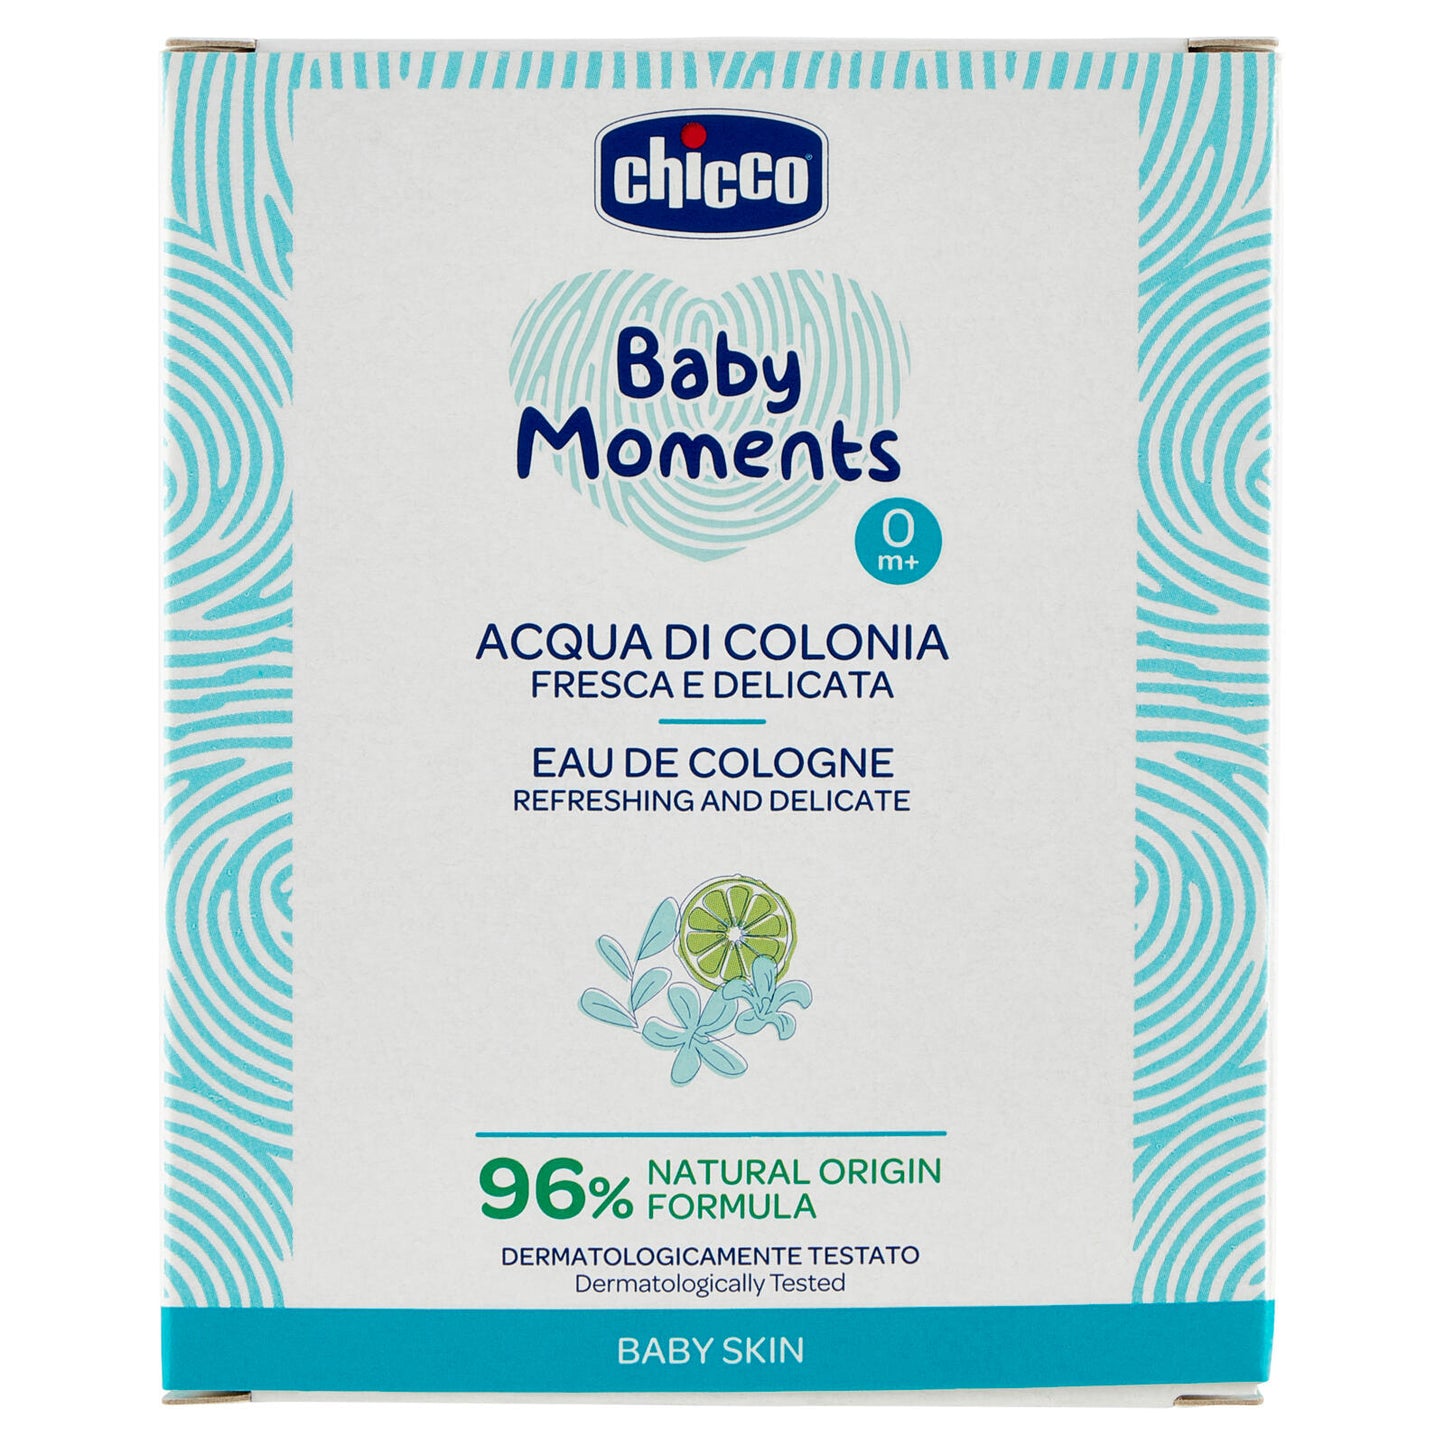 chicco Baby Moments Acqua di Colonia Fresca e Delicata 0m+ 100 mL